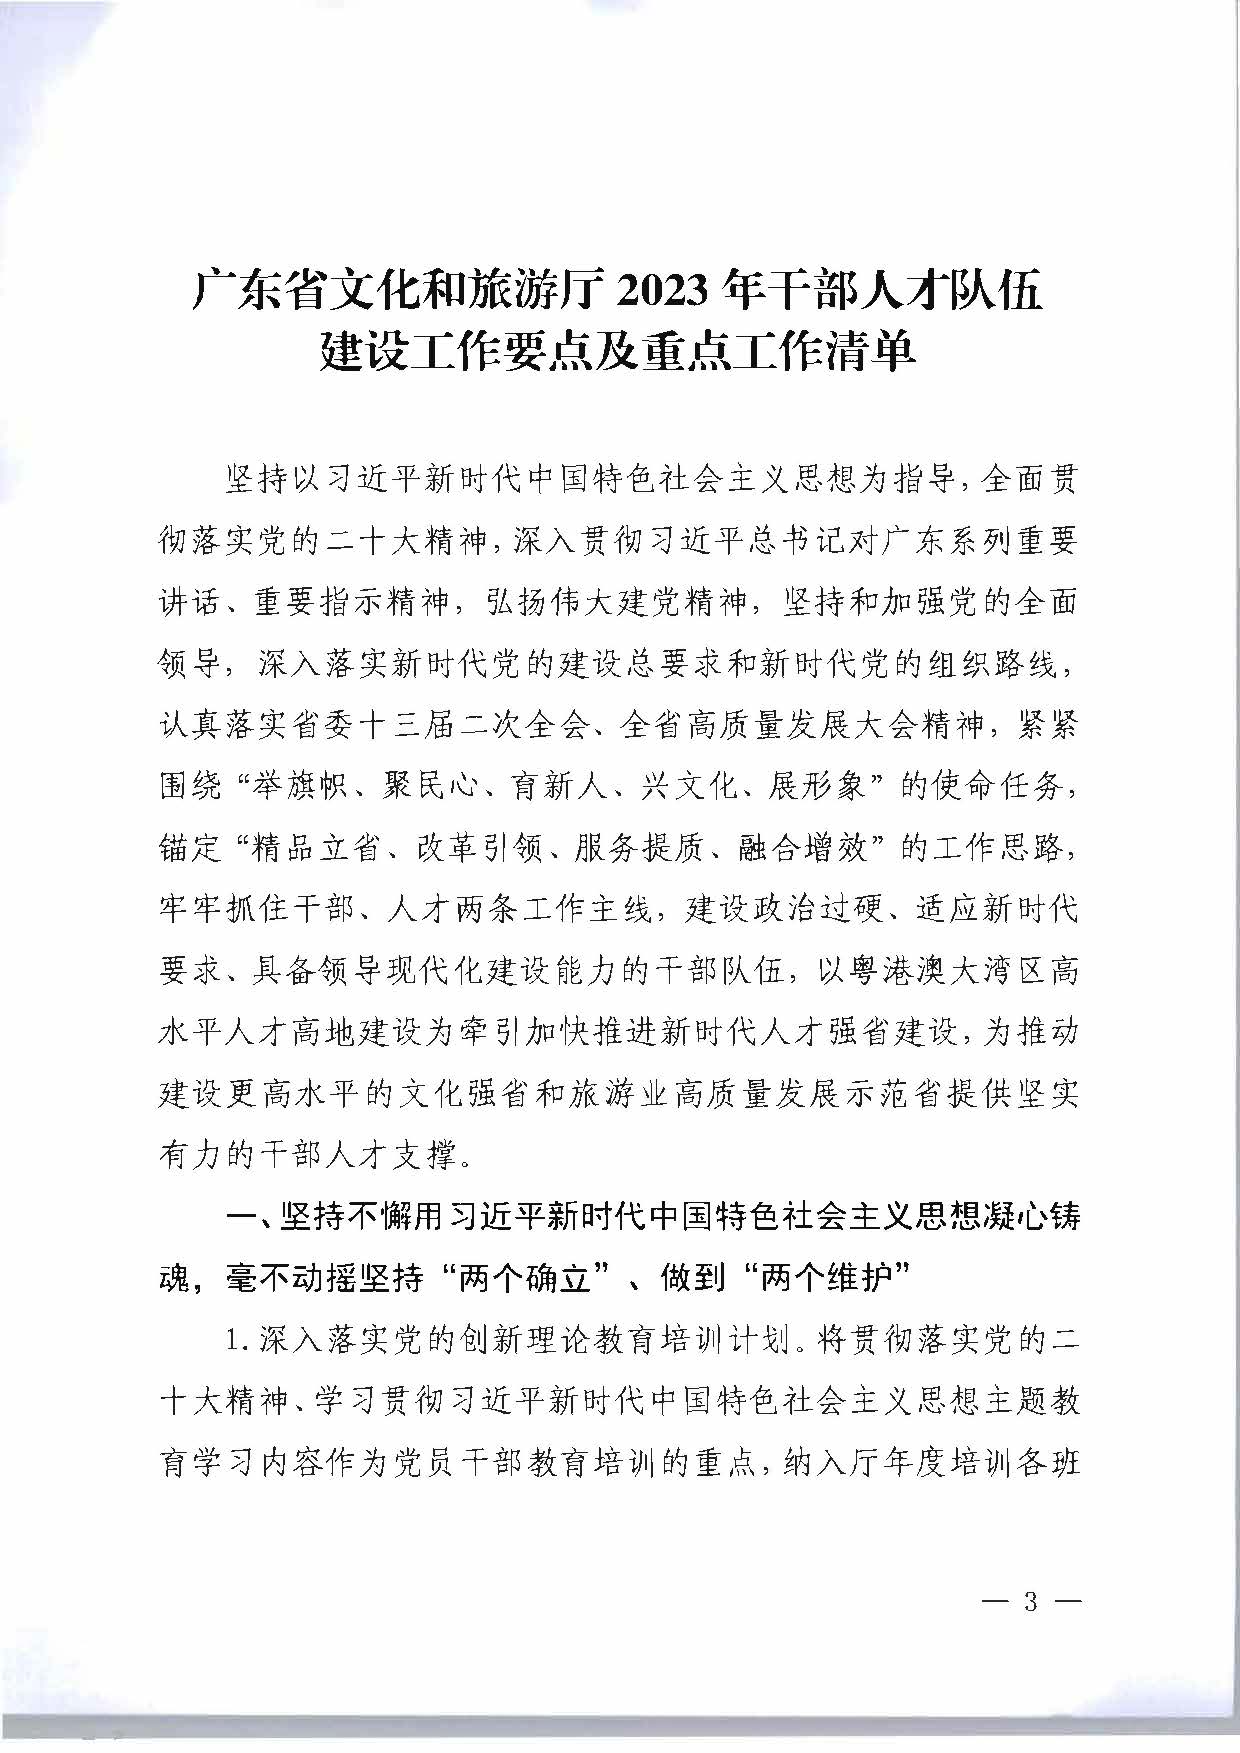 关于印发《广东省文化和旅游厅2023年干部人才队伍建设工作要点及重点工作清单》的通知_页面_03.jpg